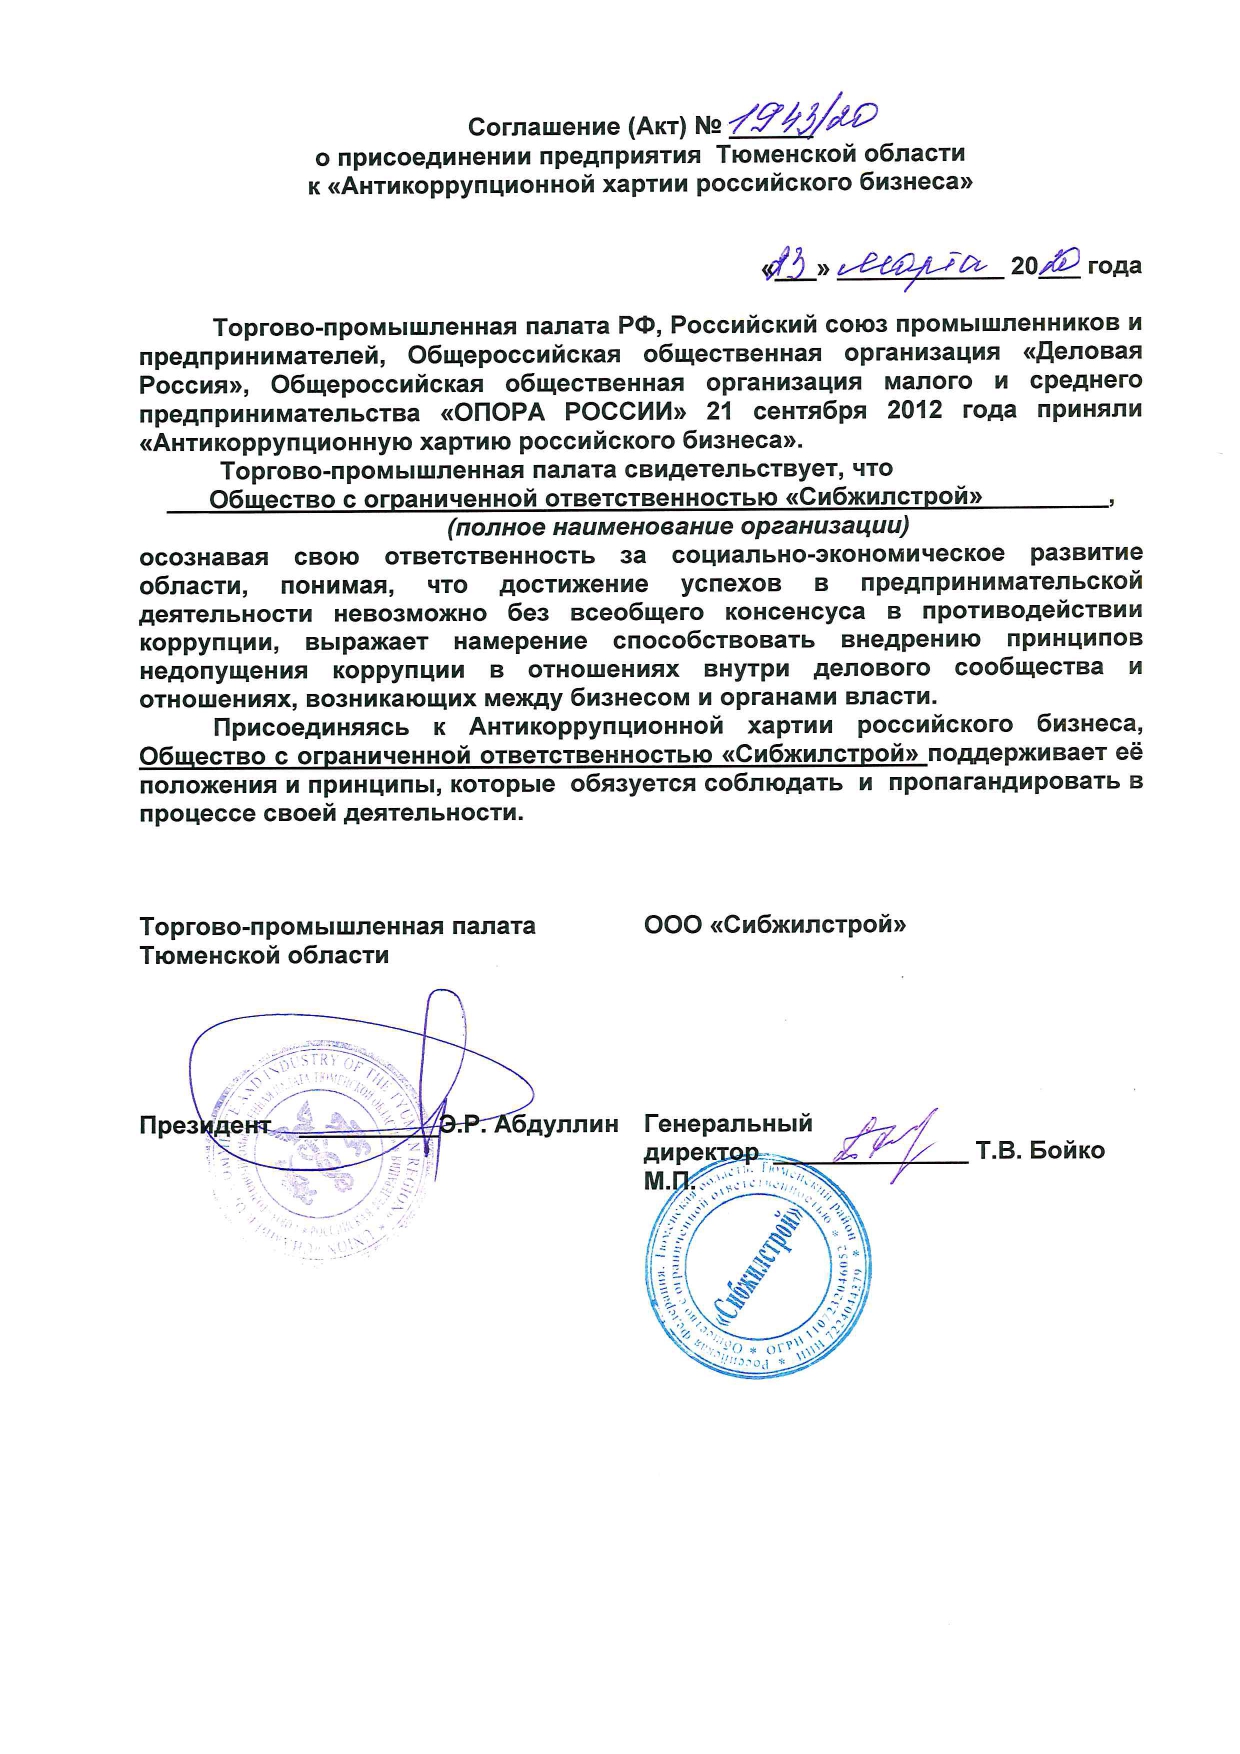 Соглашение о присоединении к Антикоррупционной Хартии российского бизнеса